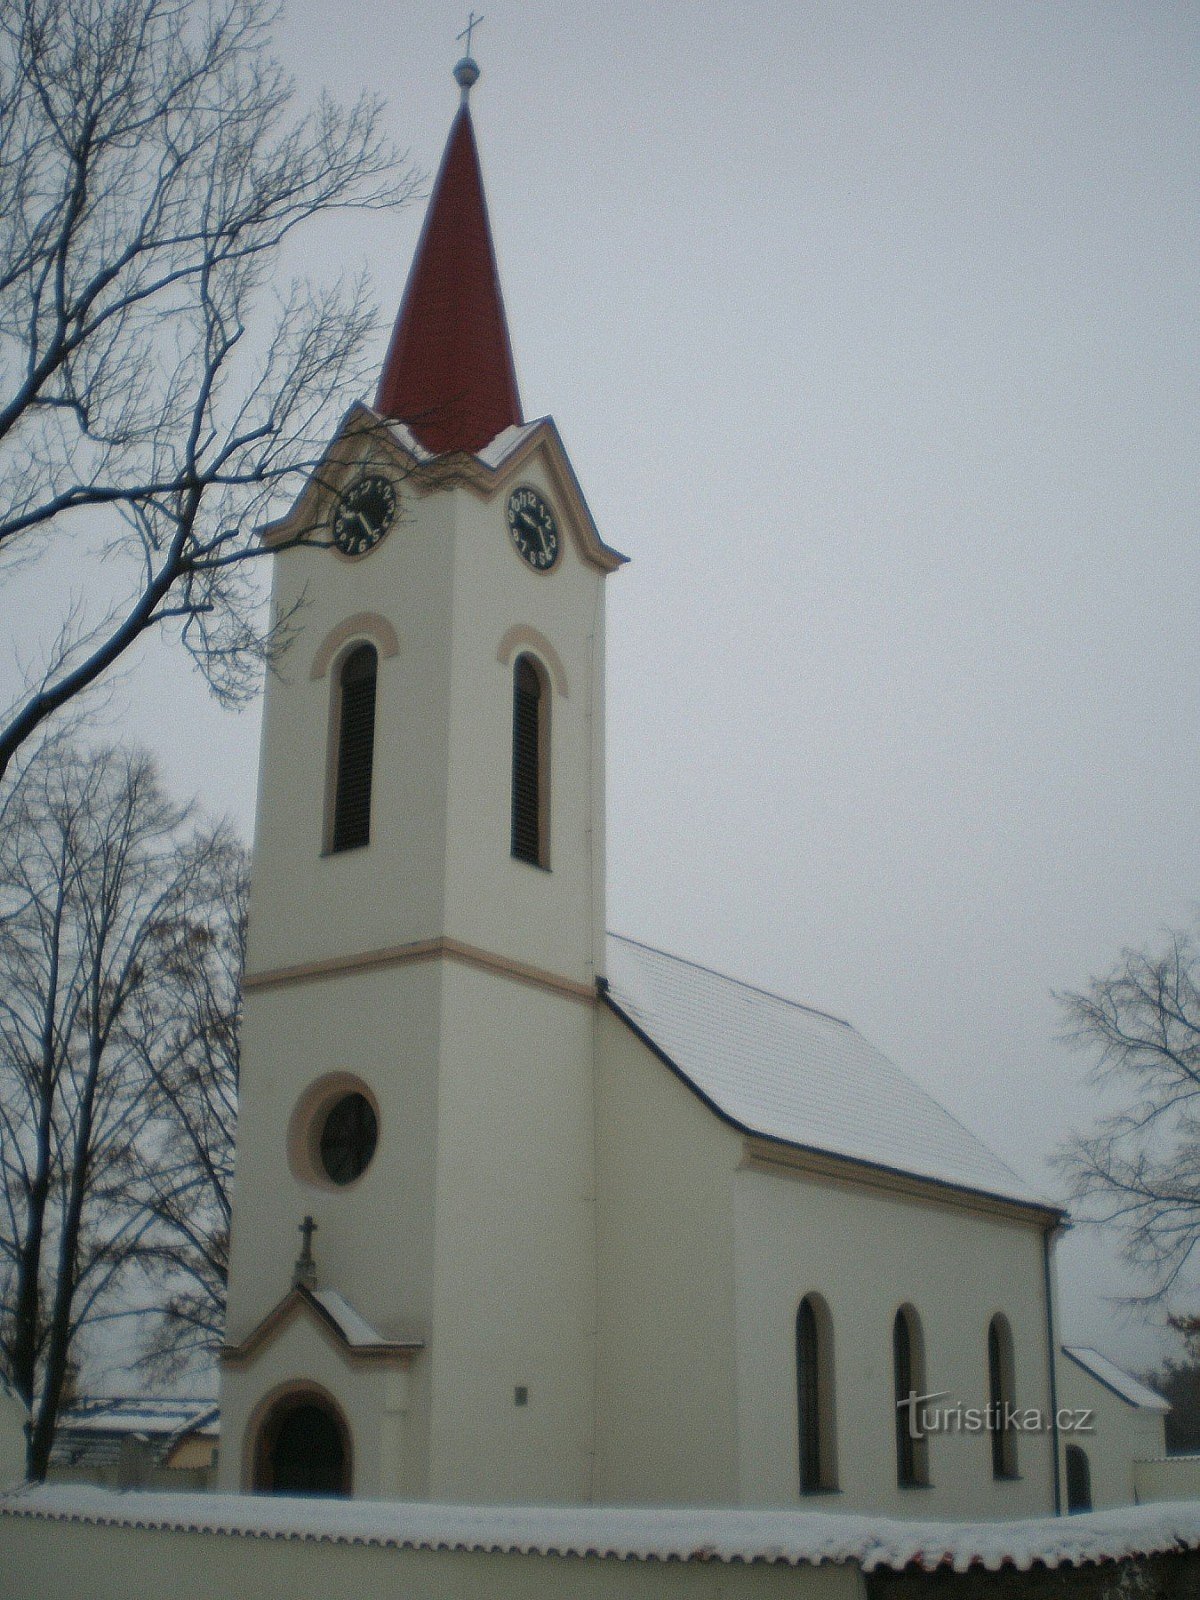 Dubeček - église de St. Pierre